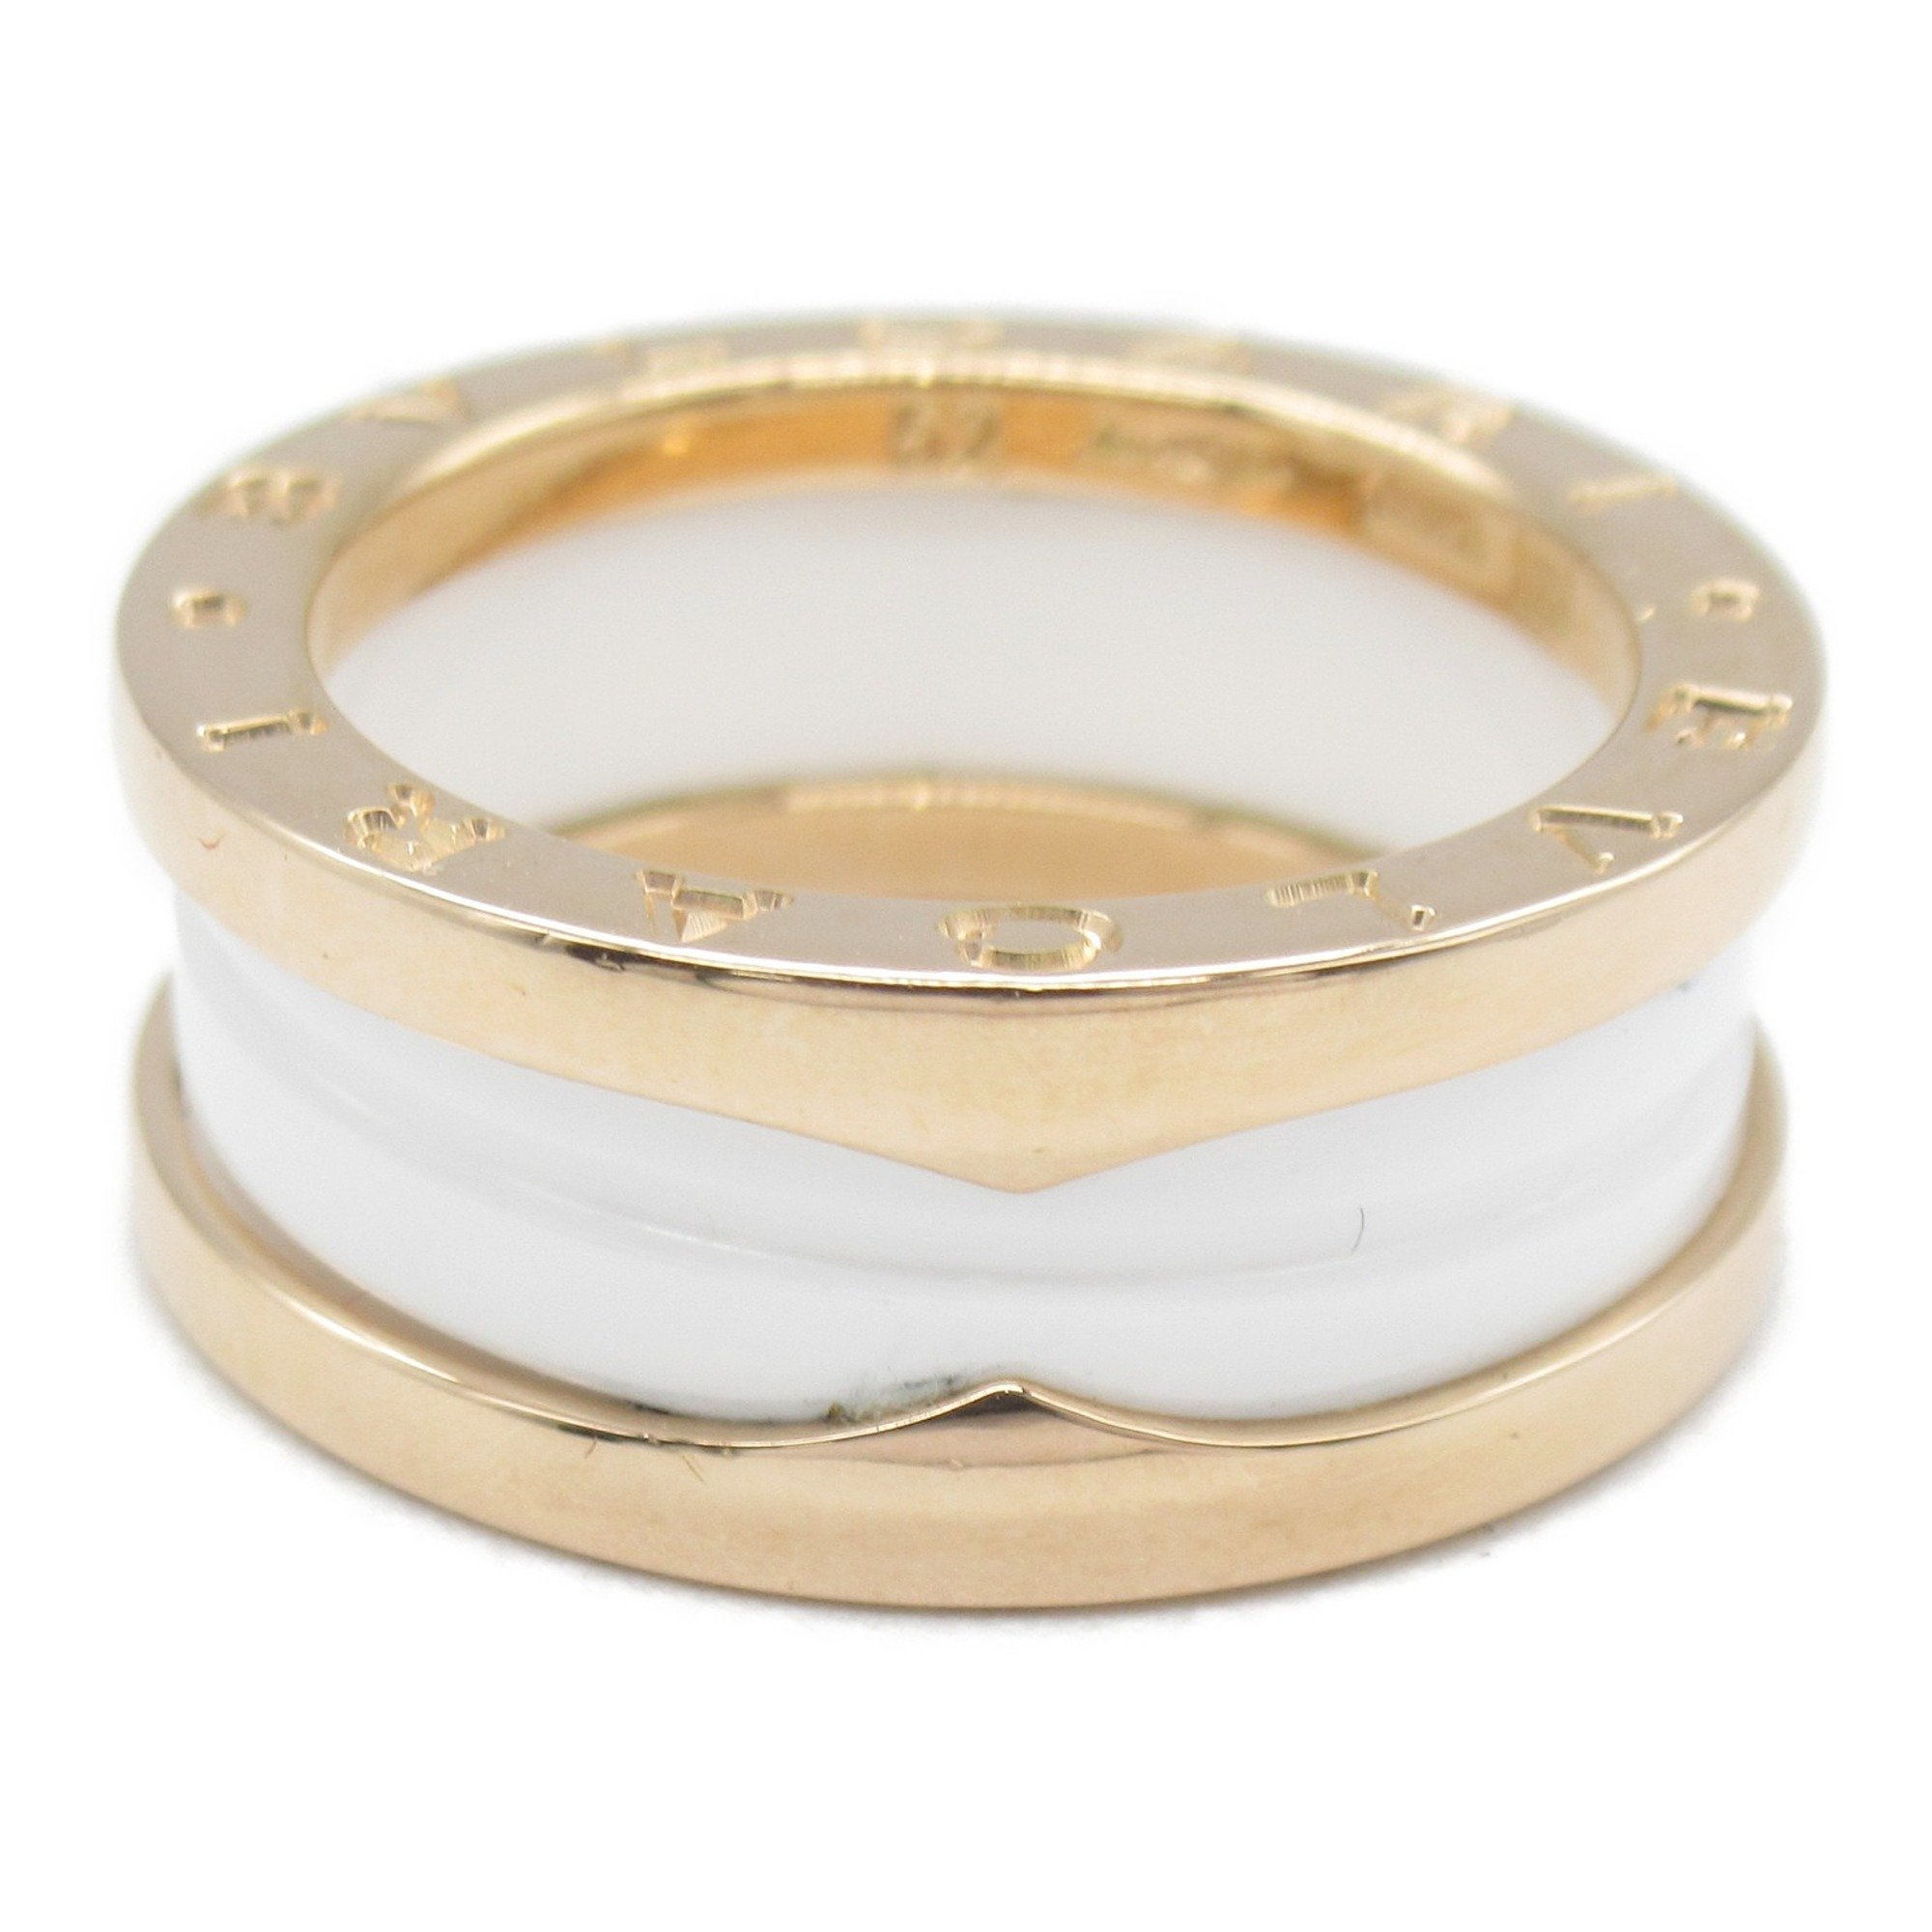 BVLGARI B-zero1 B-zero one ring Ring White  K18PG(Rose Gold) White